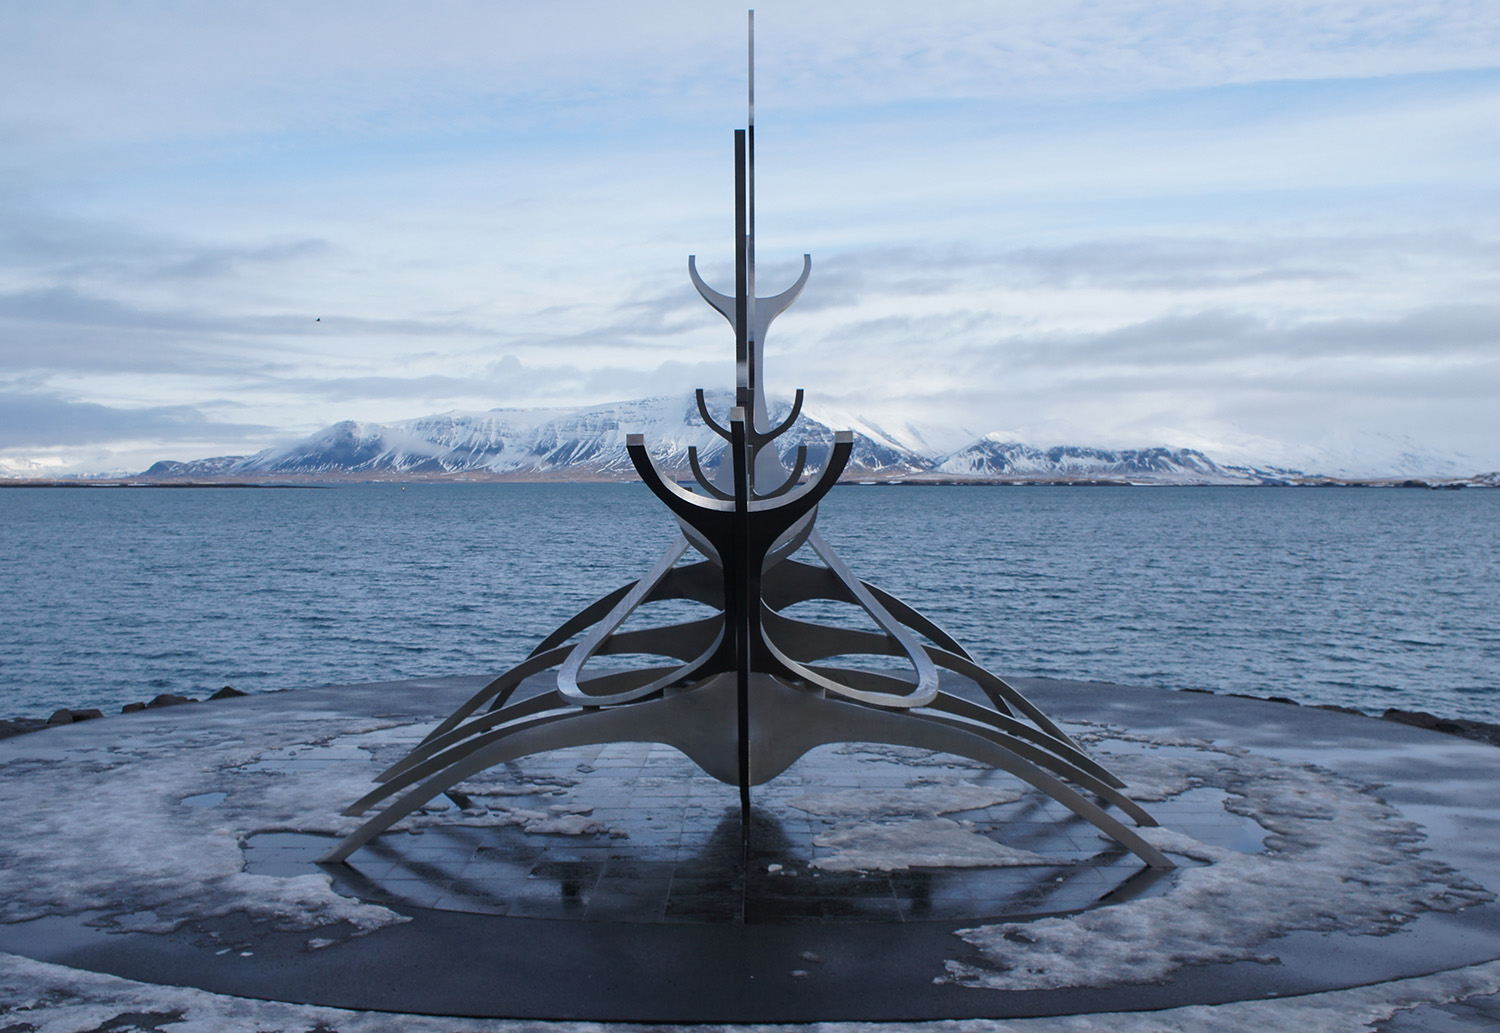  Sun Voyager (Sólfar) in Reykjavik, 2016